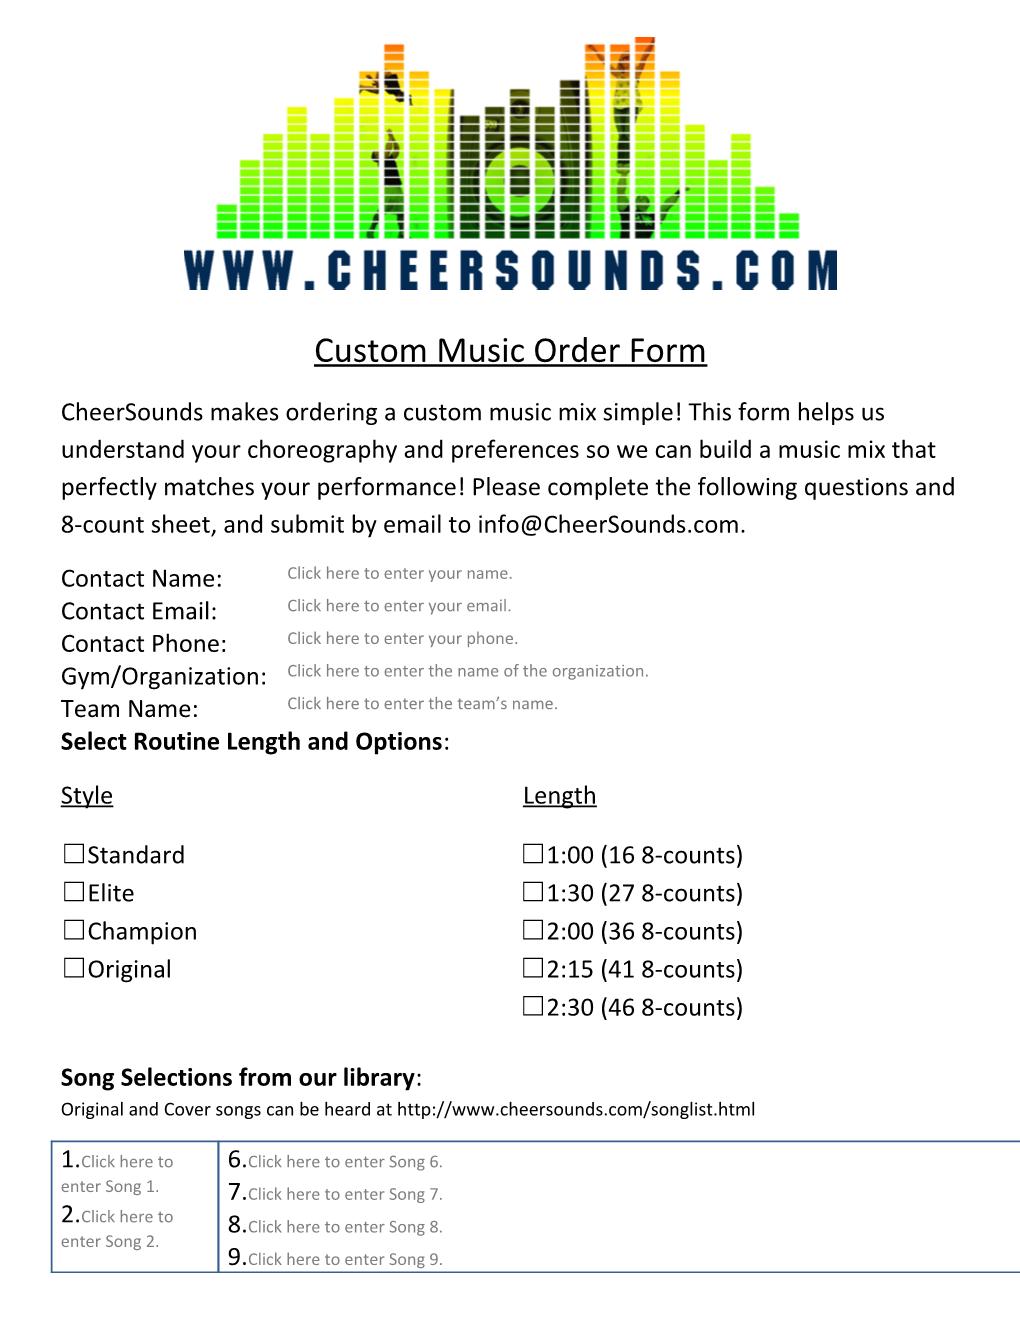 Cheer Music Mixer 8-Count Sheet